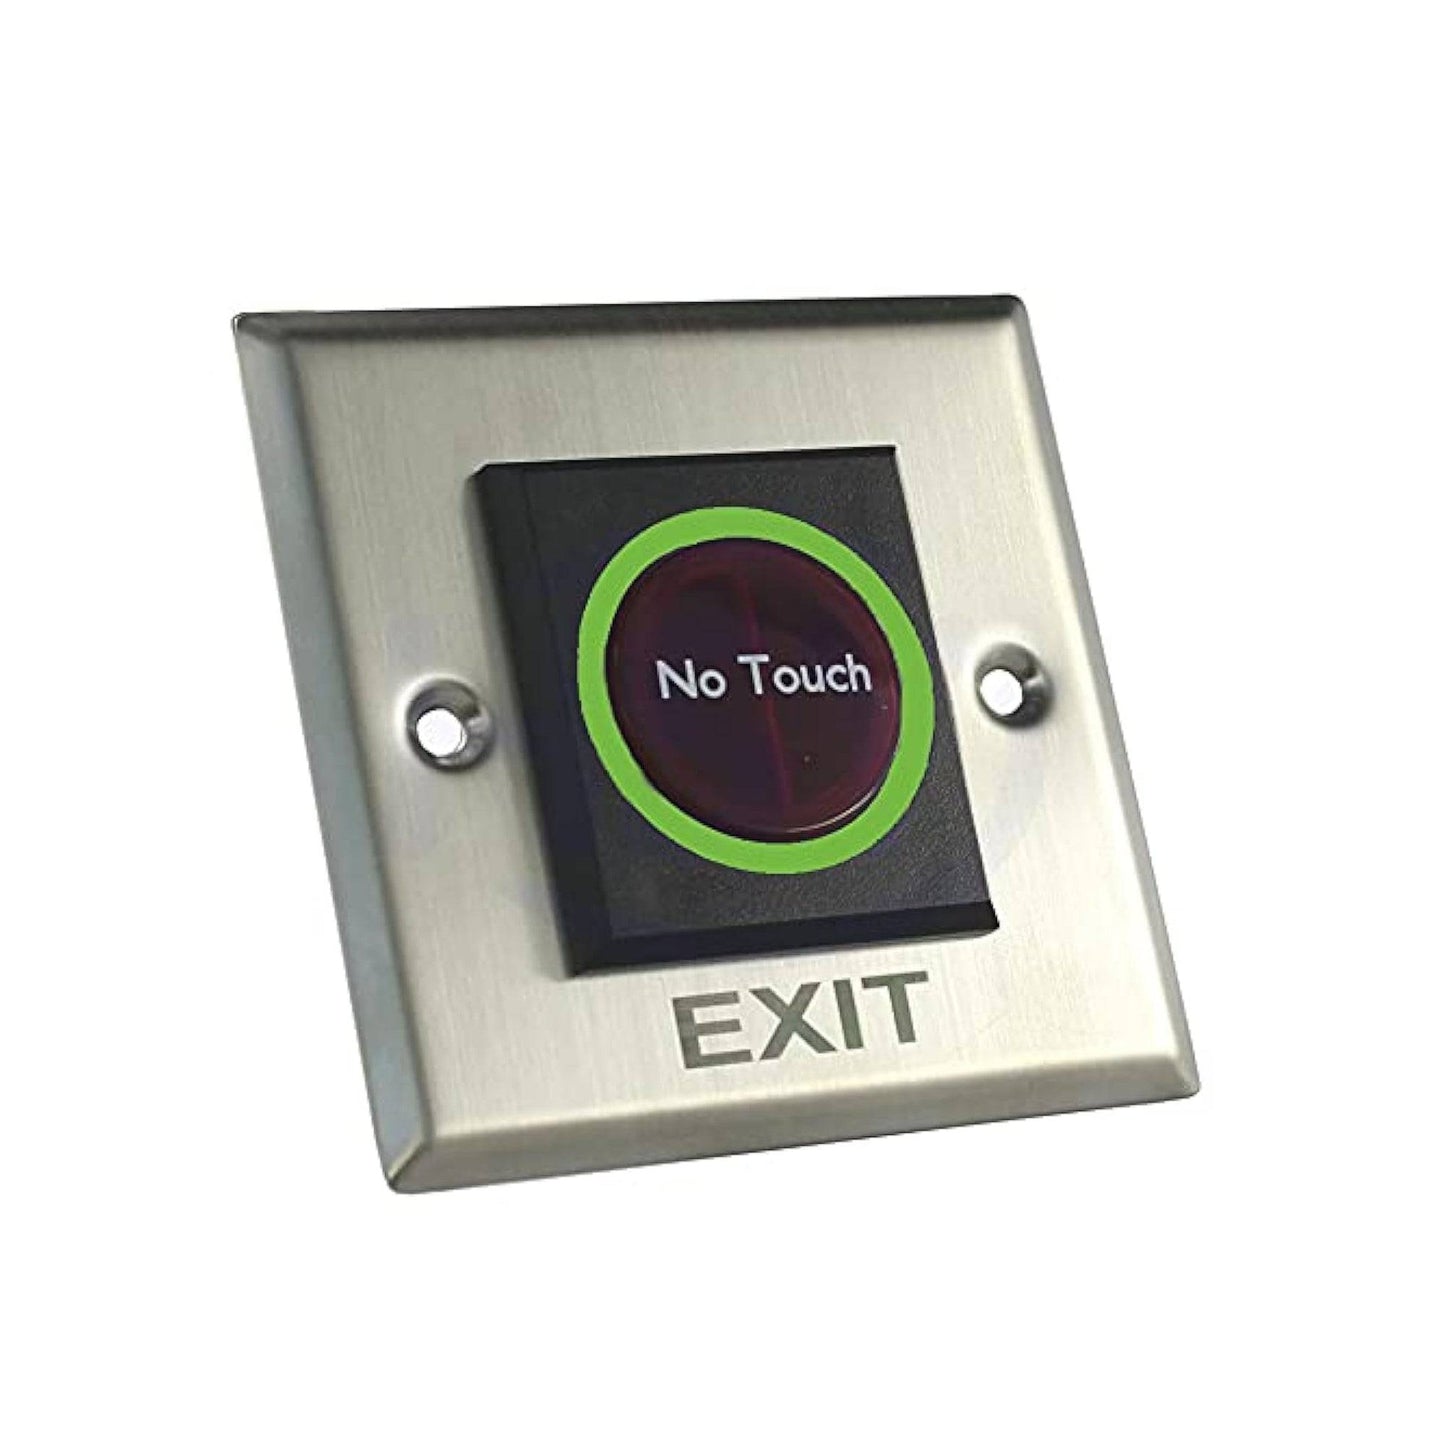 Door Exit Switch